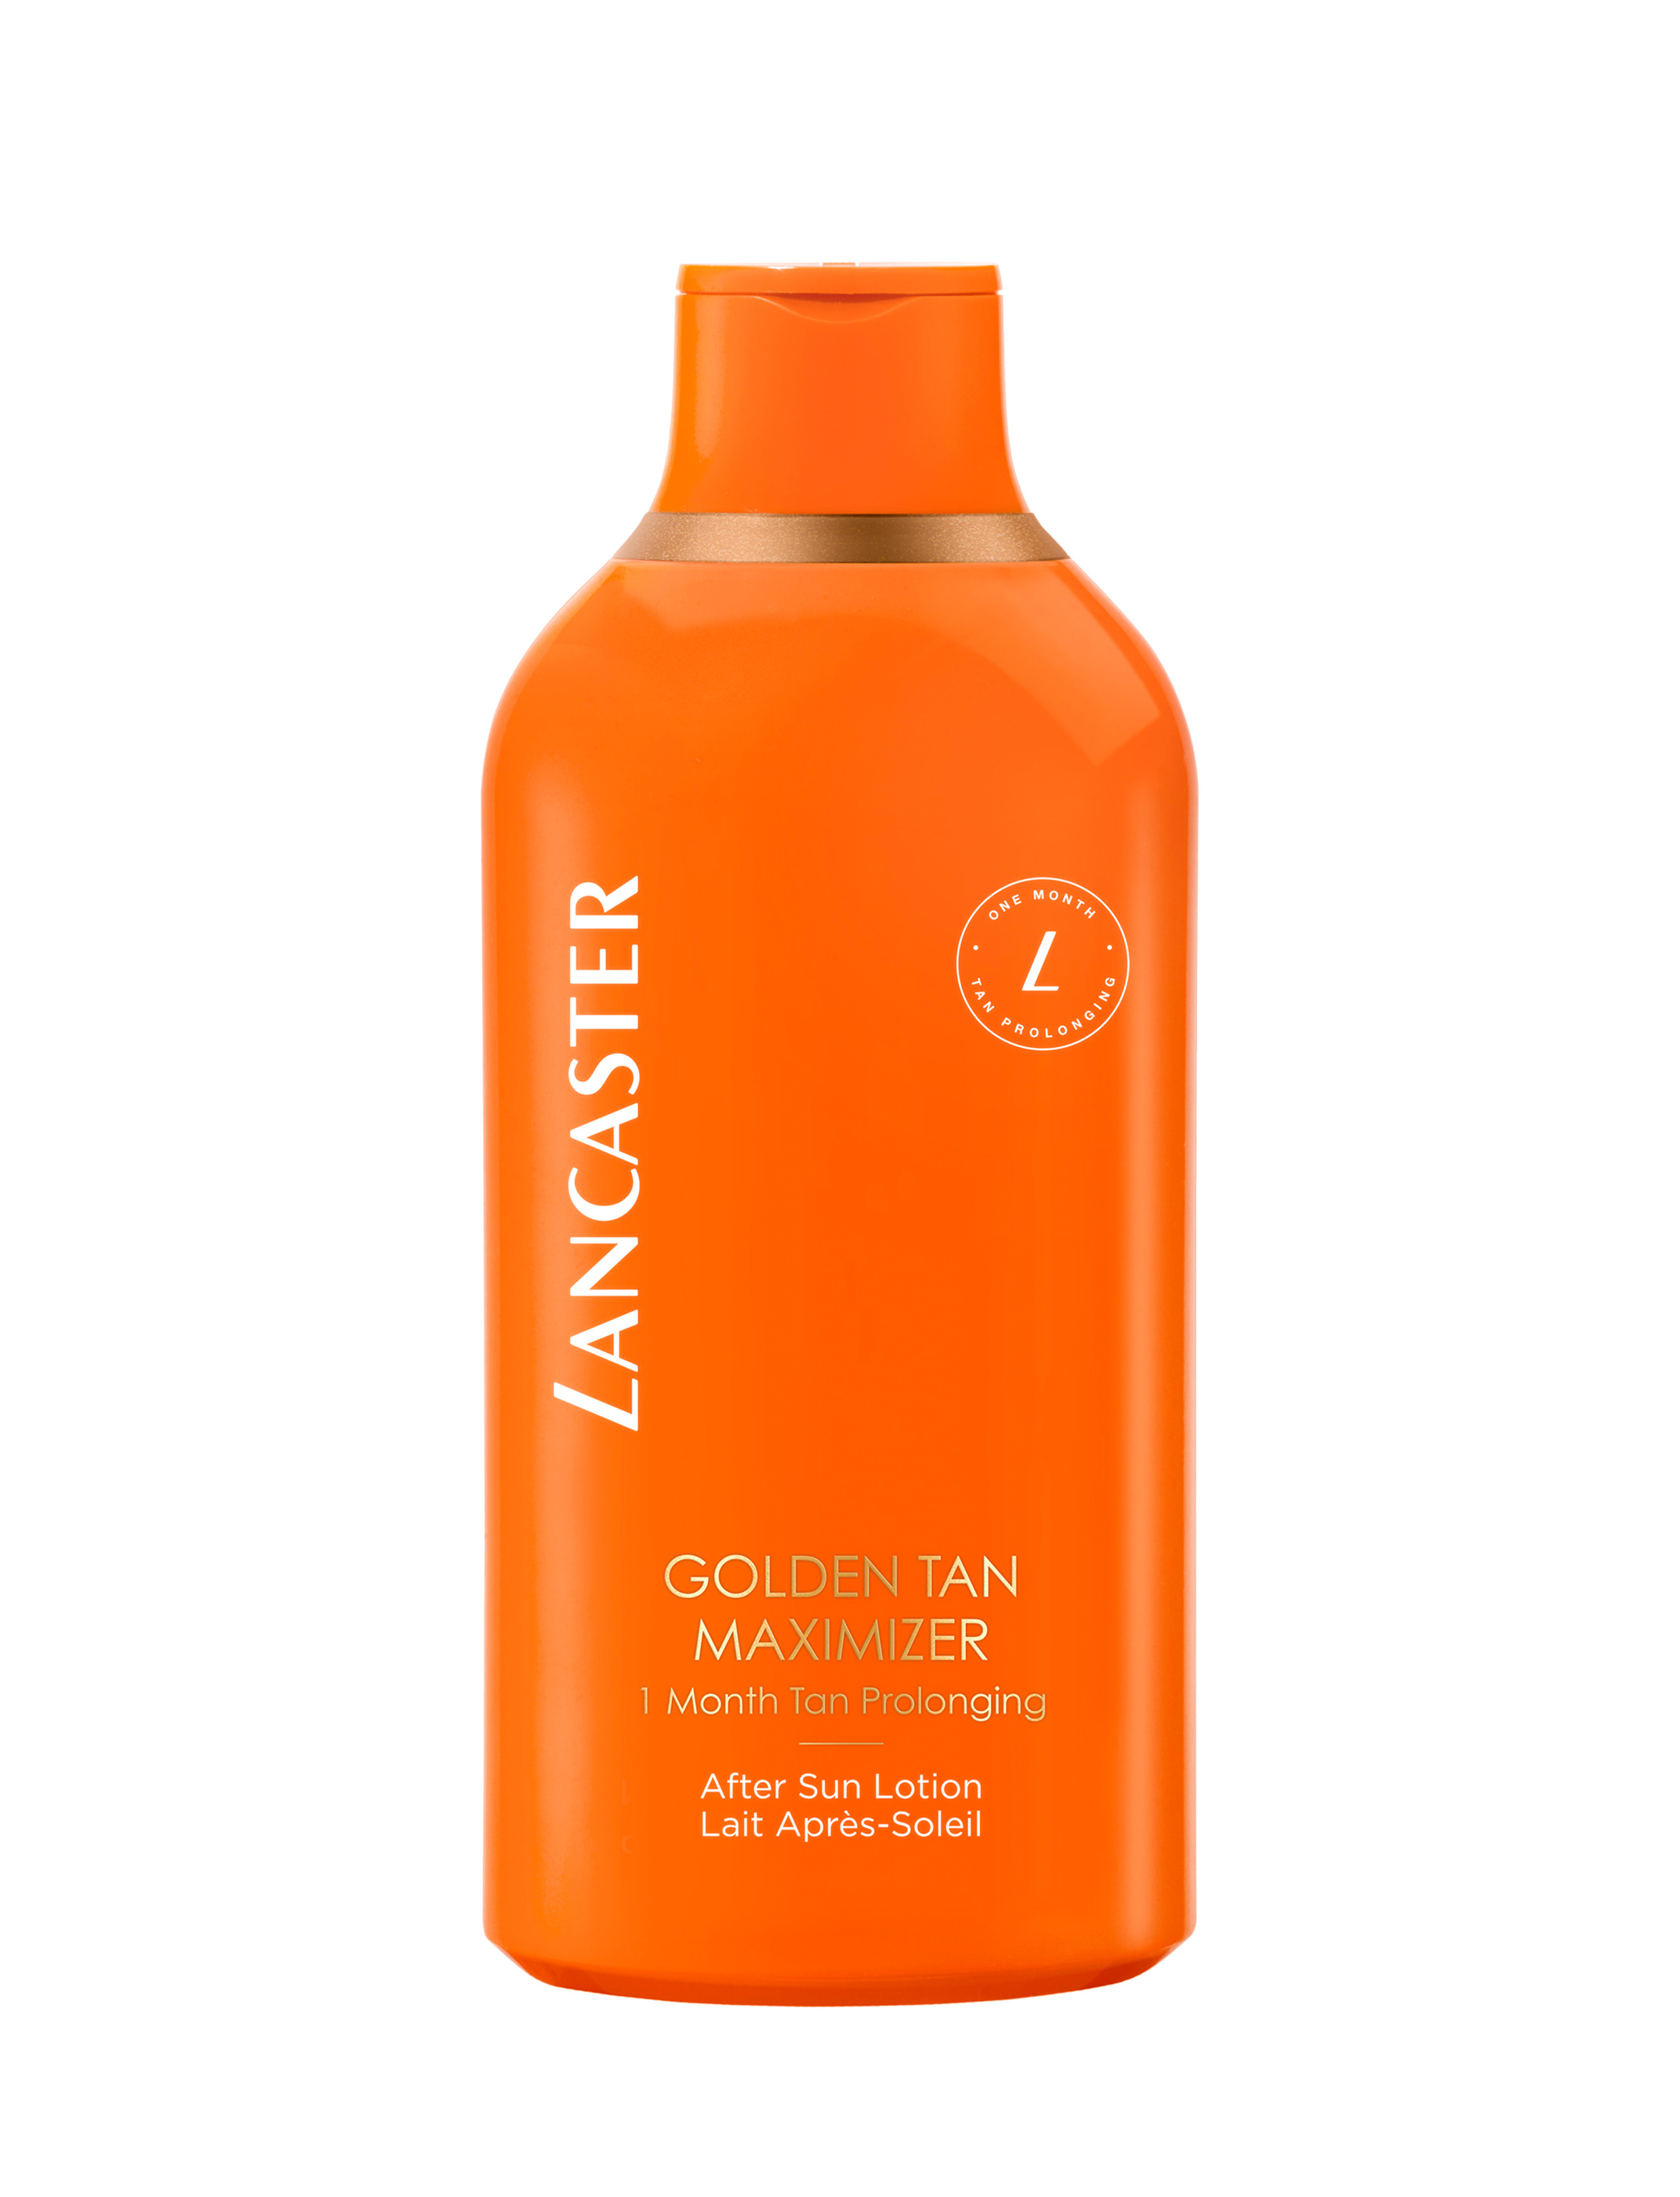  After Sun Lotion Golden Tan Maximizer